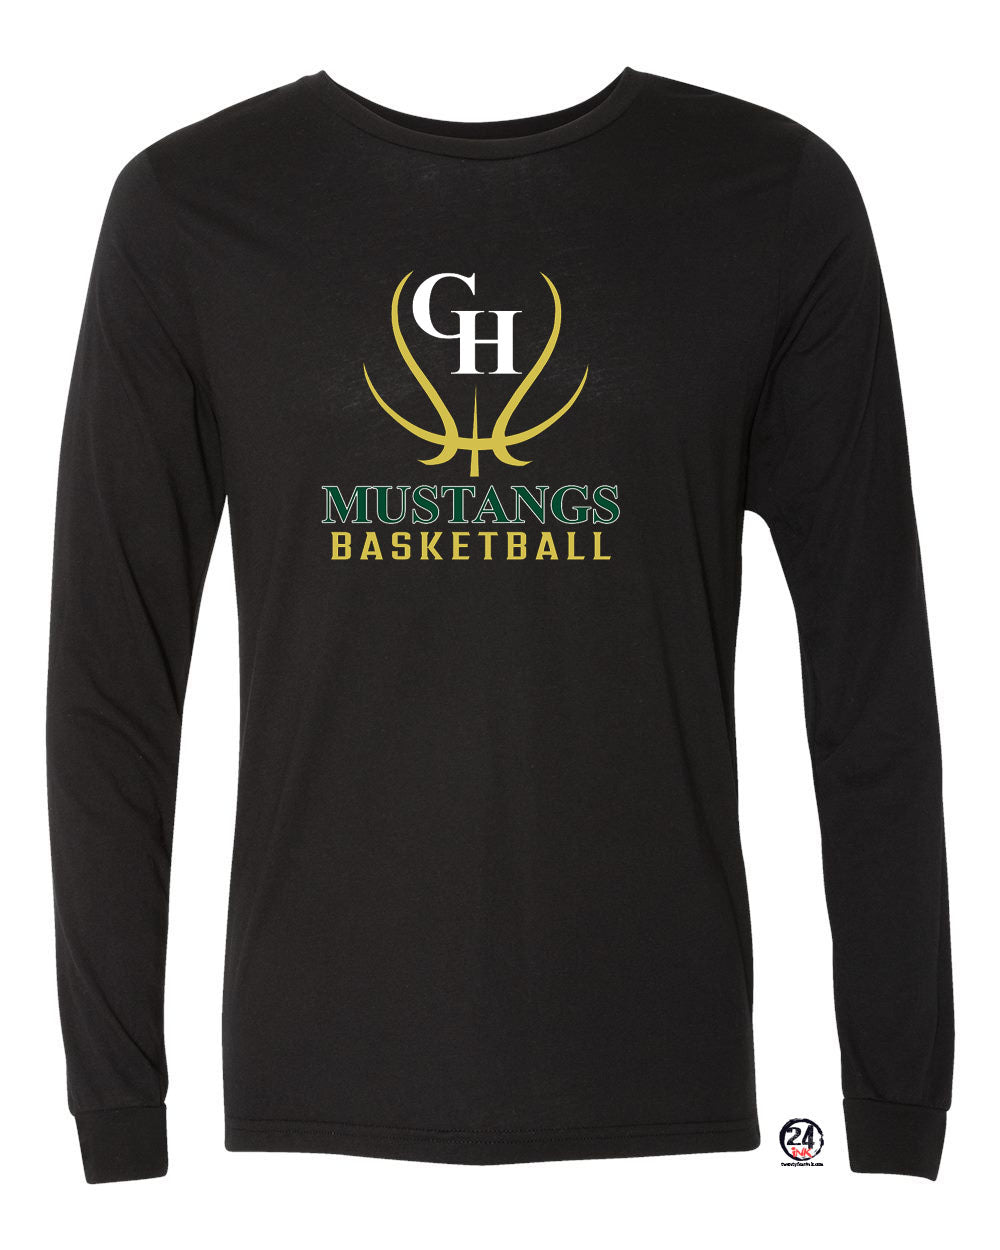 Green Hills Basketball design 7 Long Sleeve Shirt